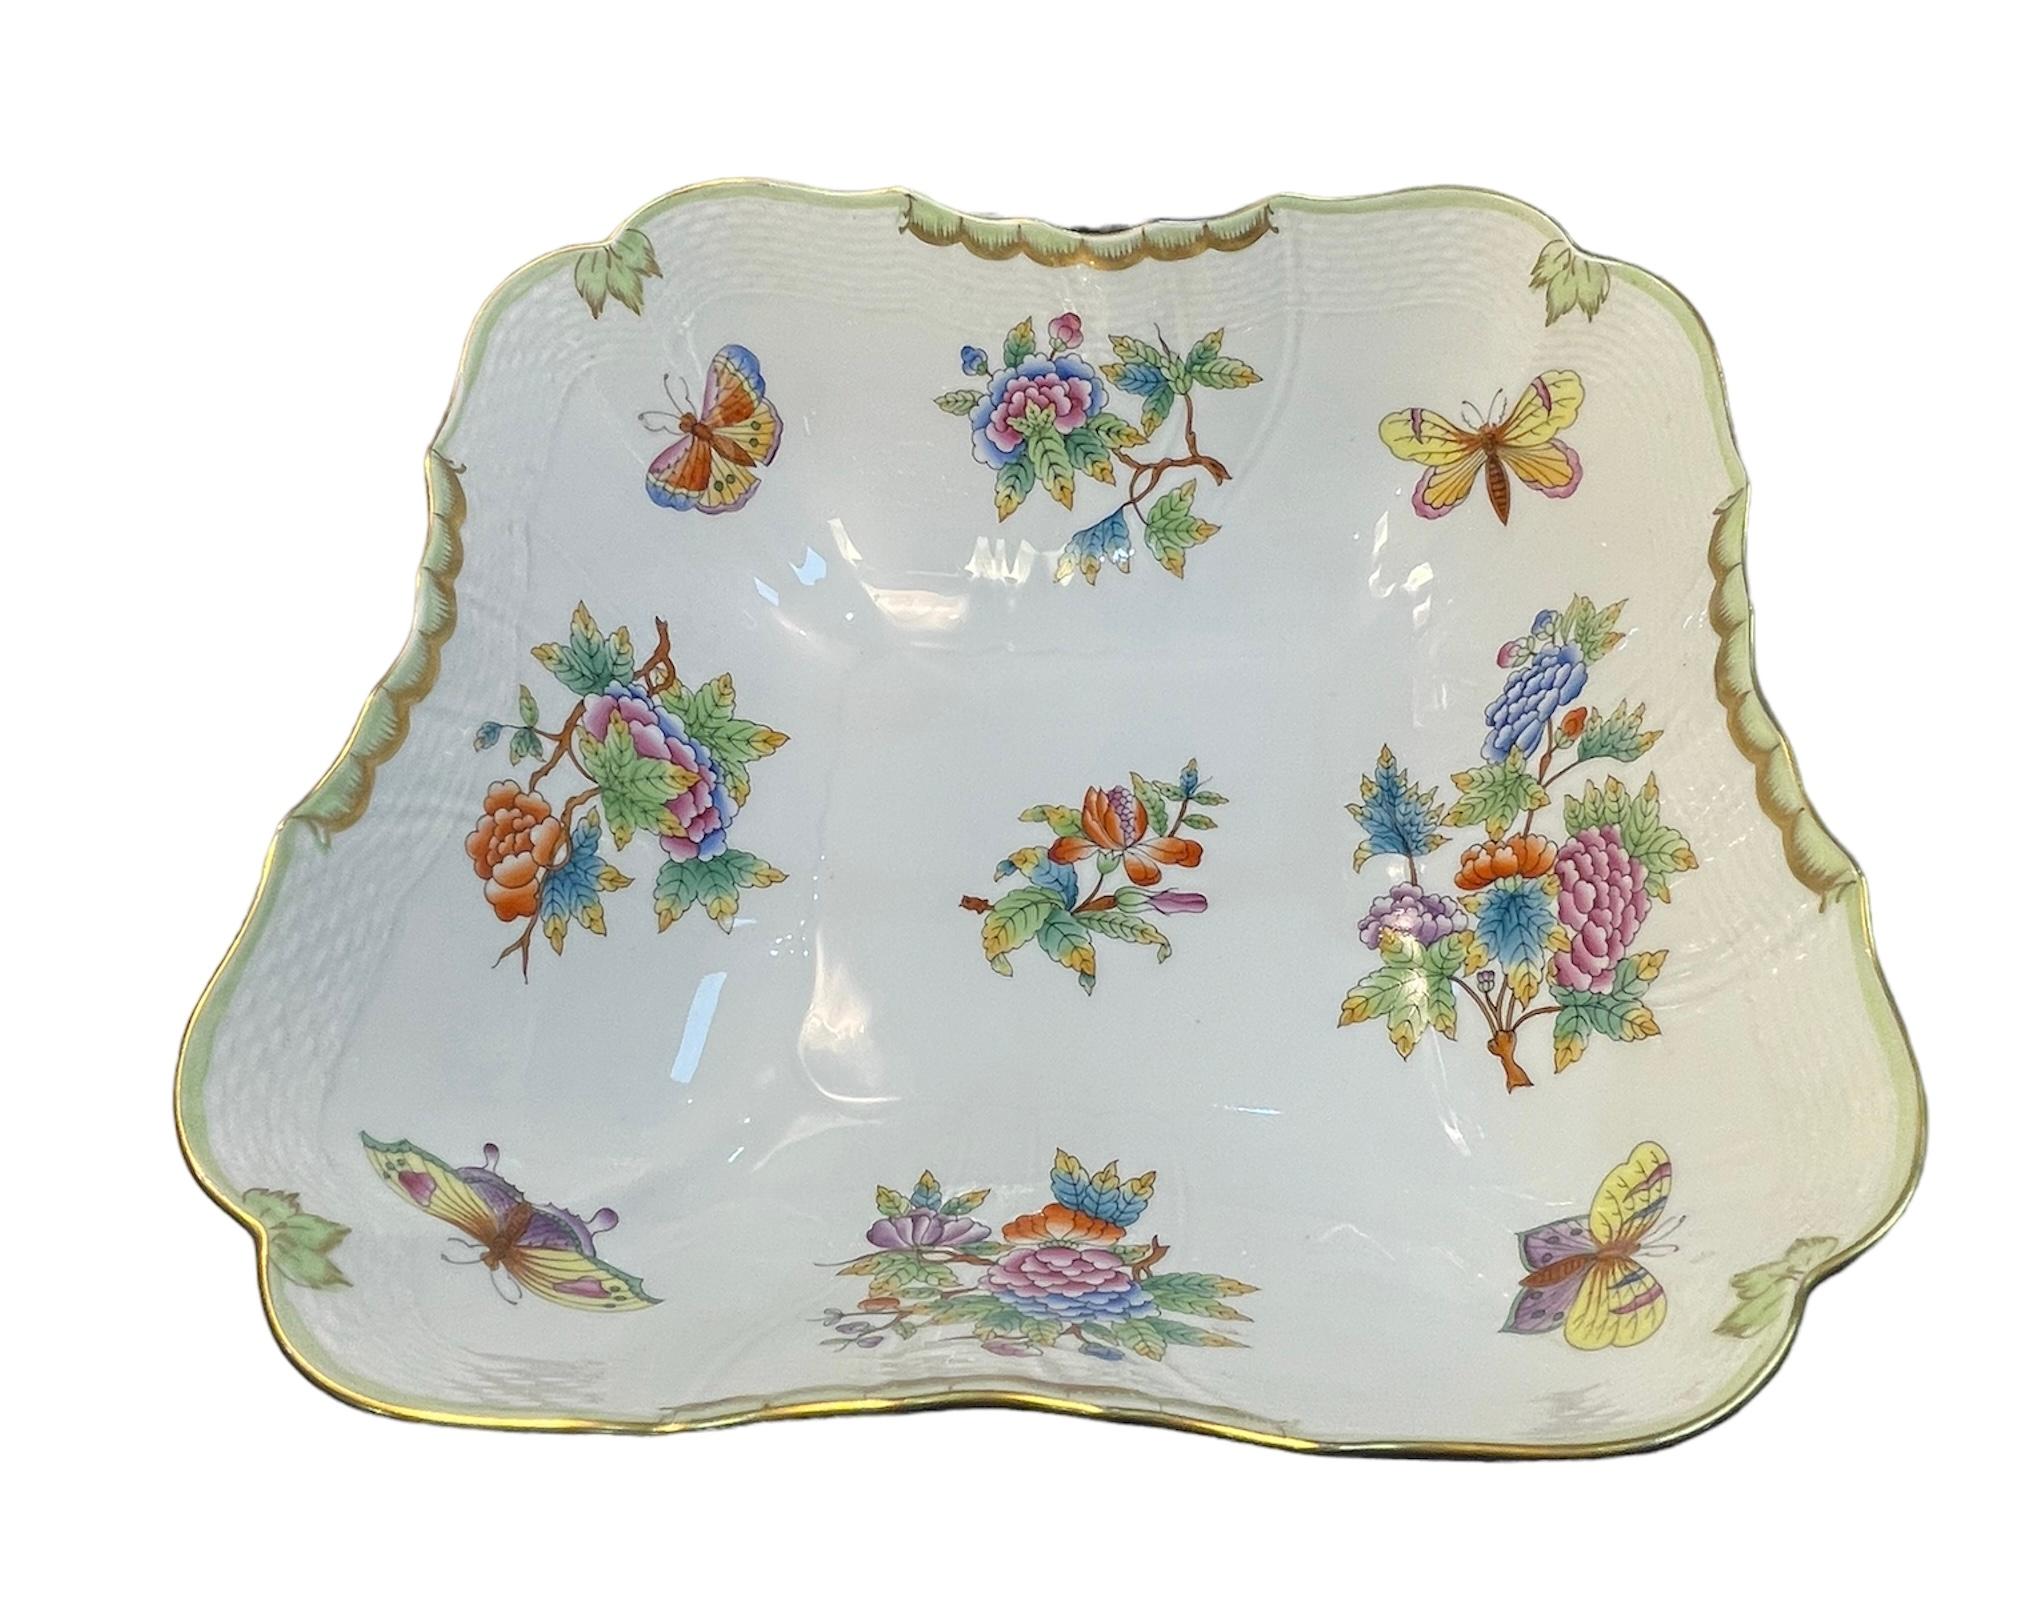 Il s'agit d'un saladier en porcelaine à motif de la reine Victoria de Herend. Il représente un bol carré décoré de petits bouquets de fleurs et de papillons colorés. La bordure festonnée est peinte à la main en vert menthe. Il est rehaussé d'une